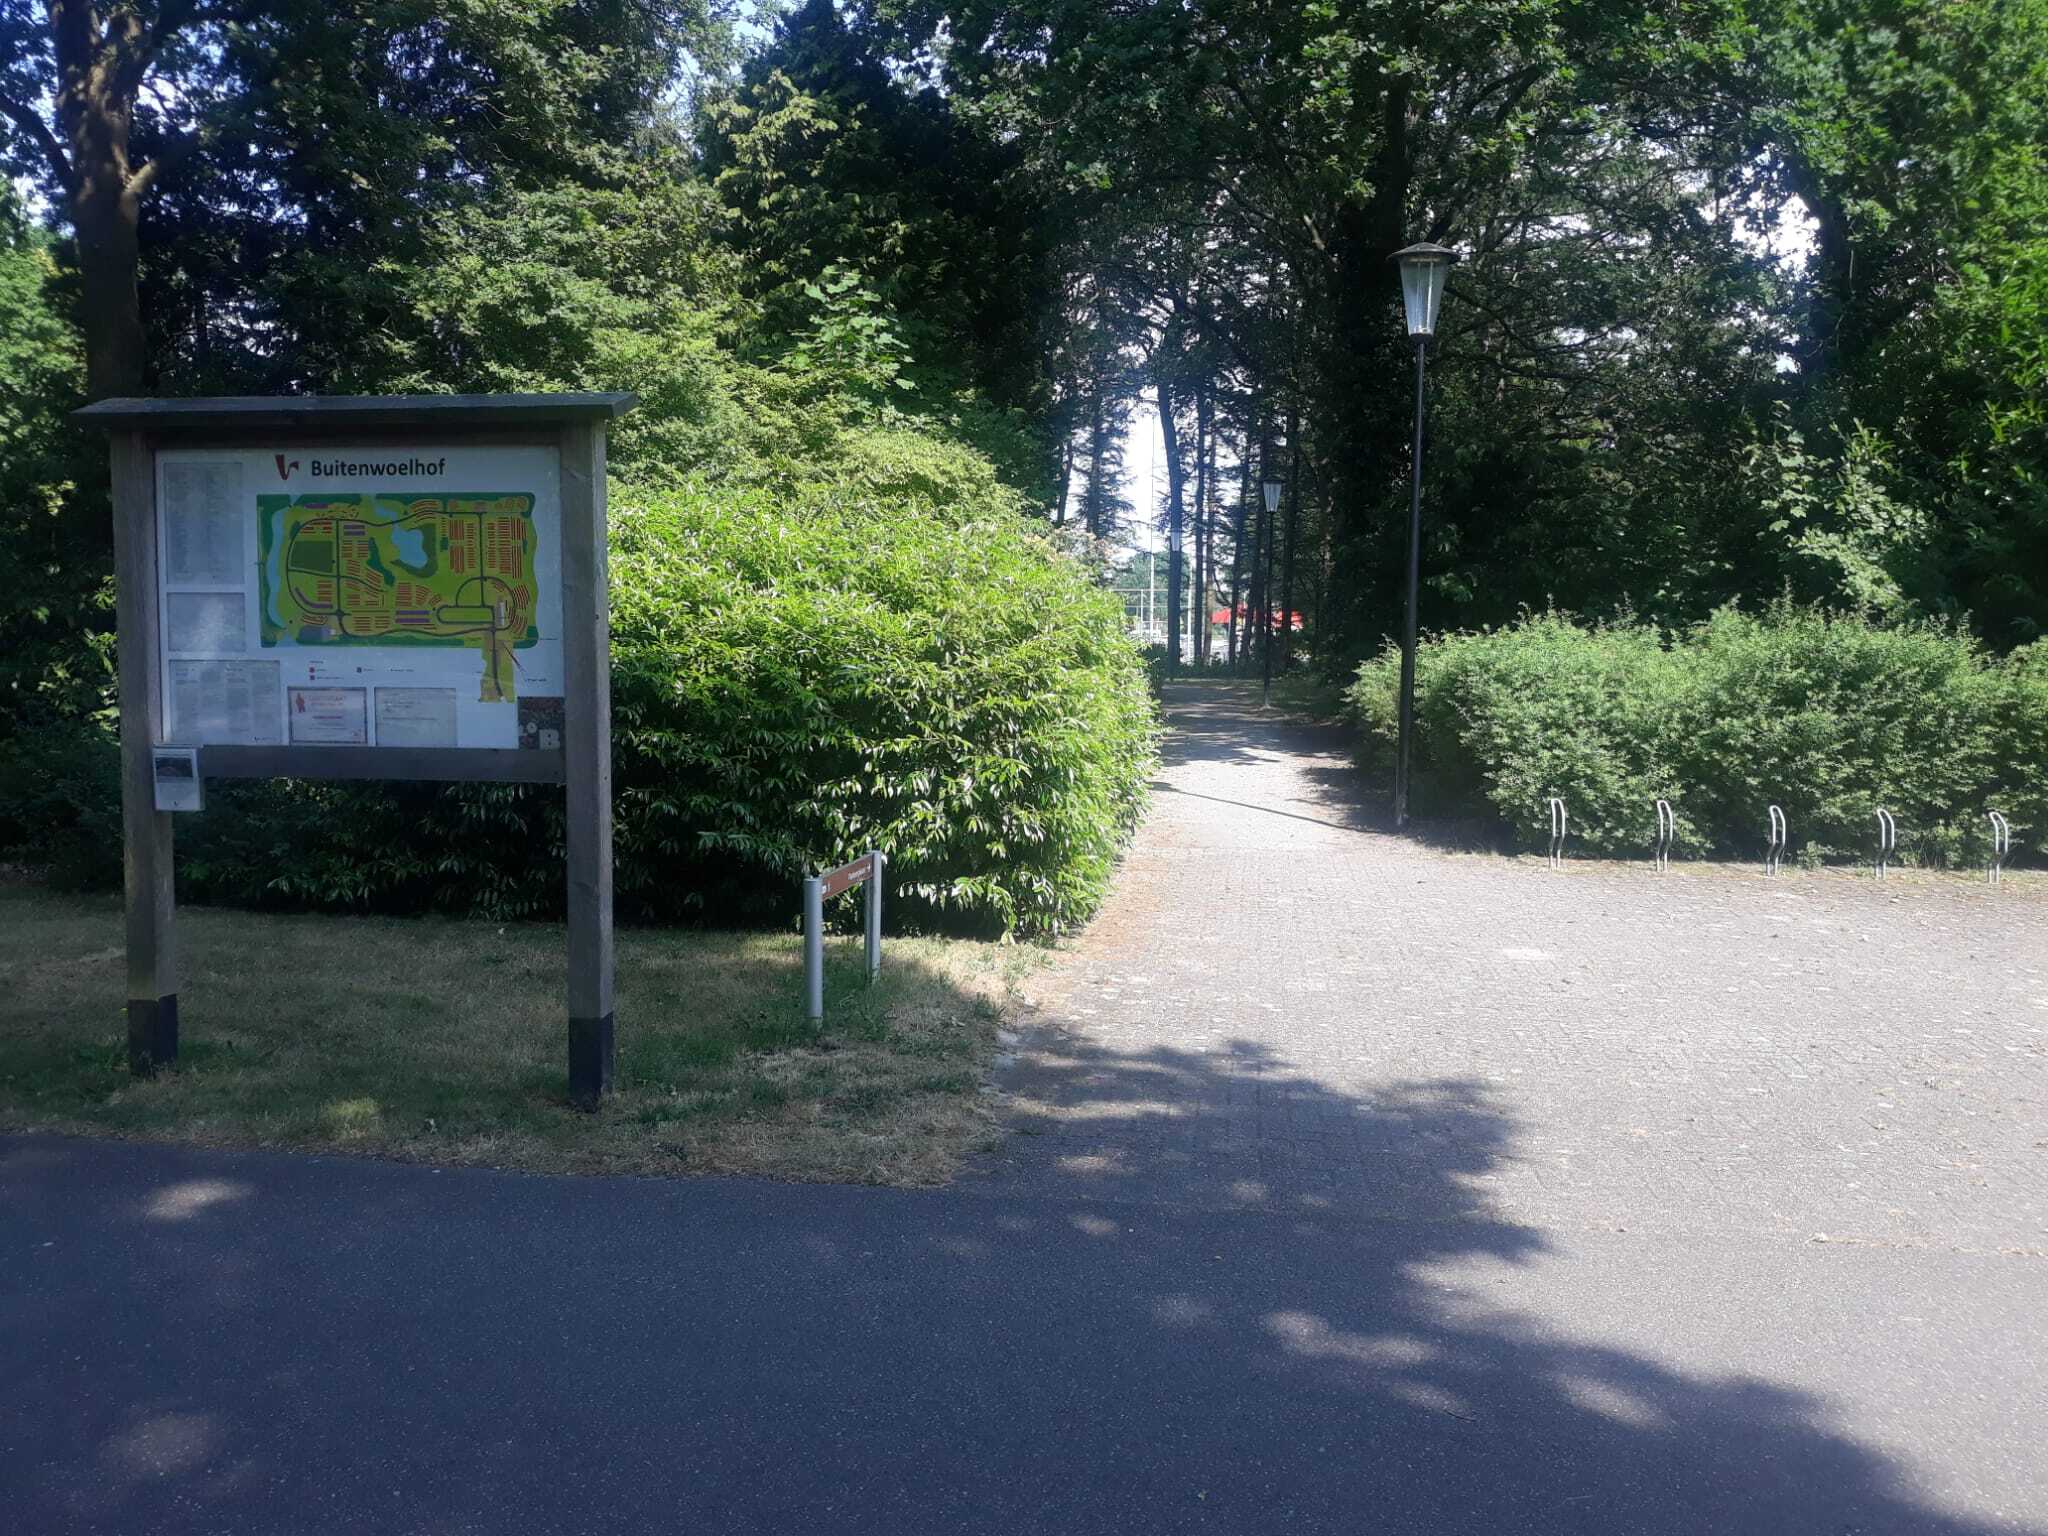 ingang begraafplaats buitenwoelhof via het Leer- en Sportpark